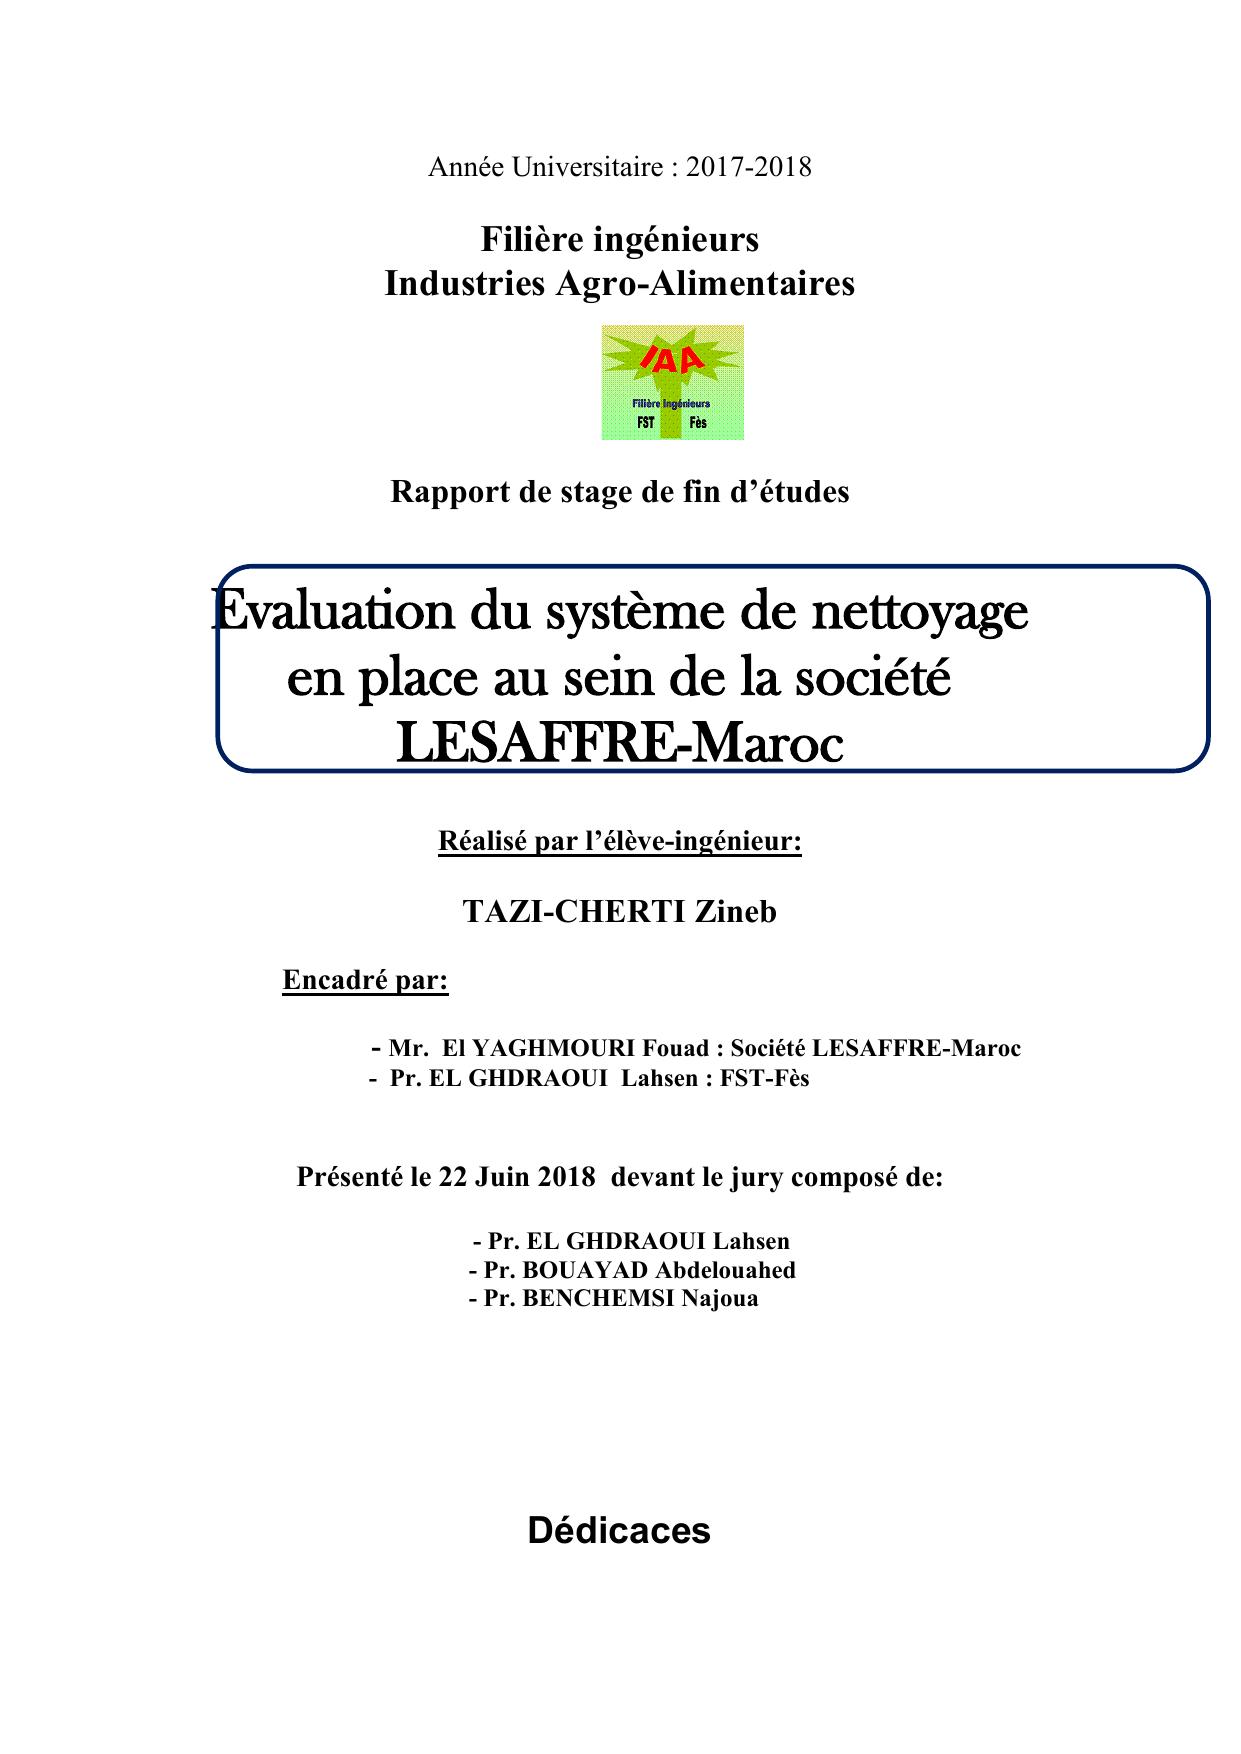 Evaluation du système de nettoyage en place au sein de la société LESAFFRE-Maroc